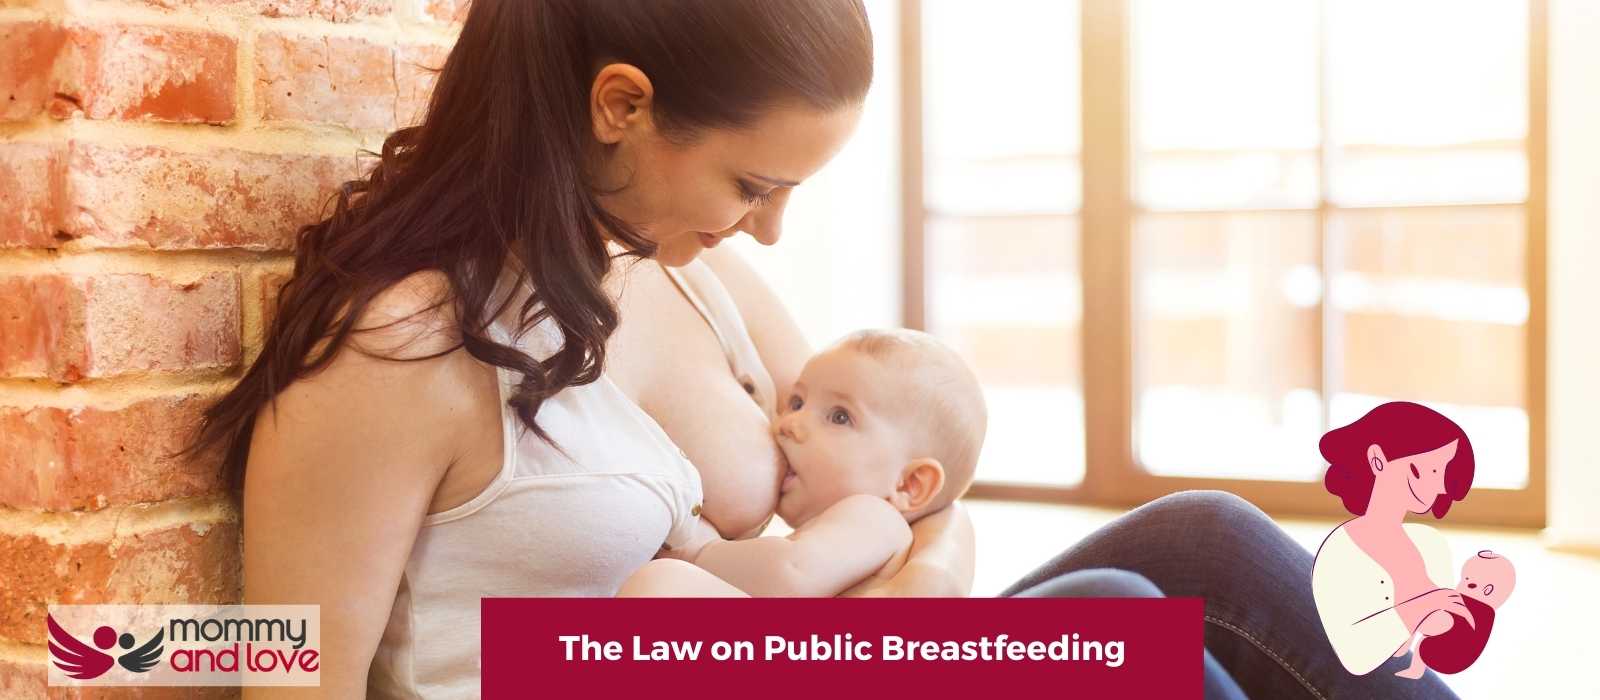 The Law on Public Breastfeeding